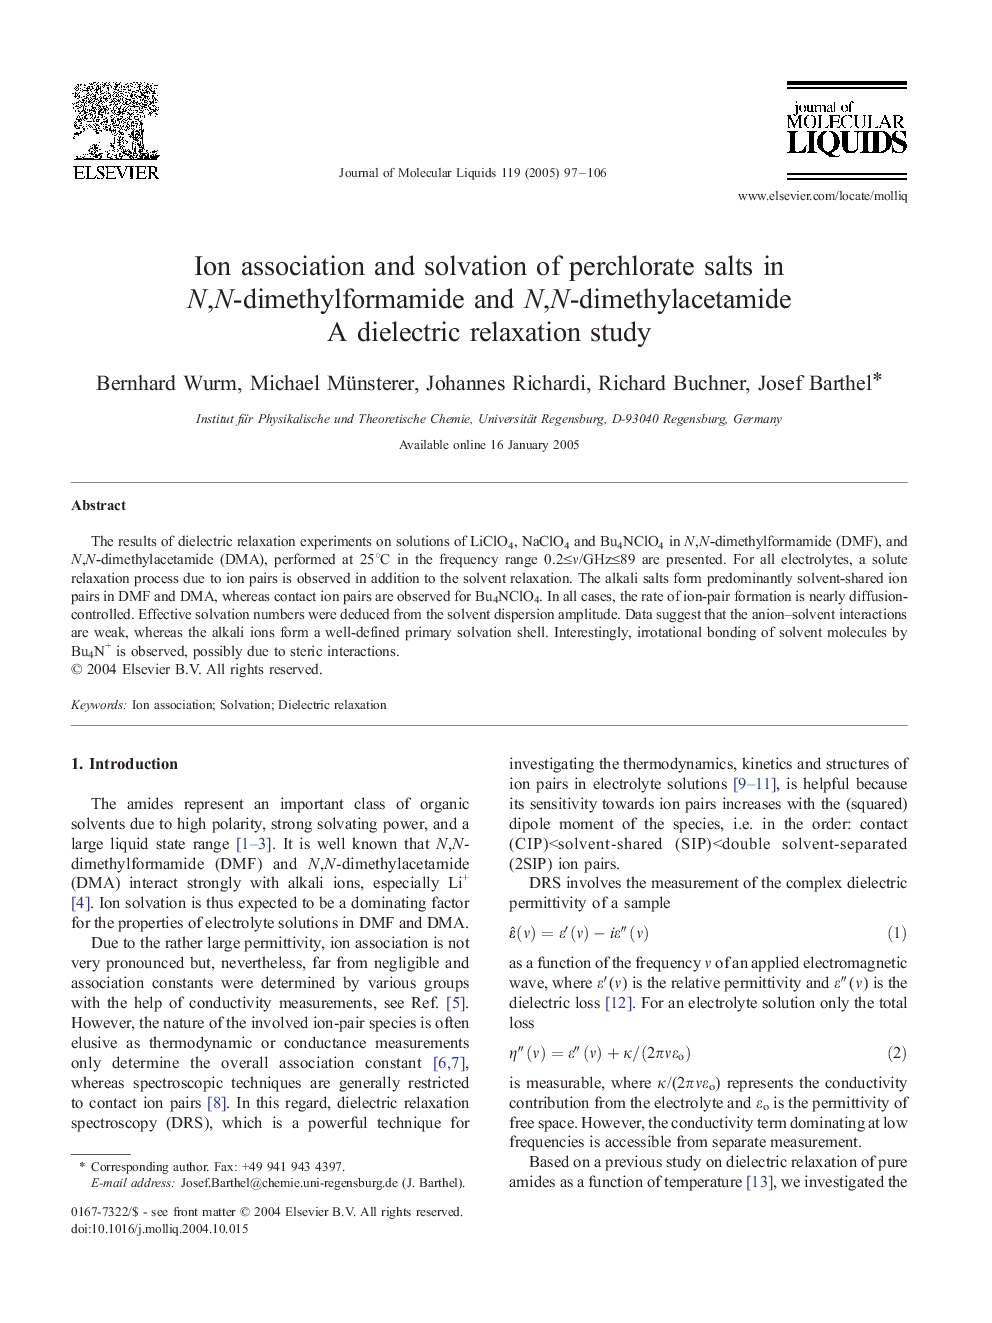 Ion association and solvation of perchlorate salts in N,N-dimethylformamide and N,N-dimethylacetamide